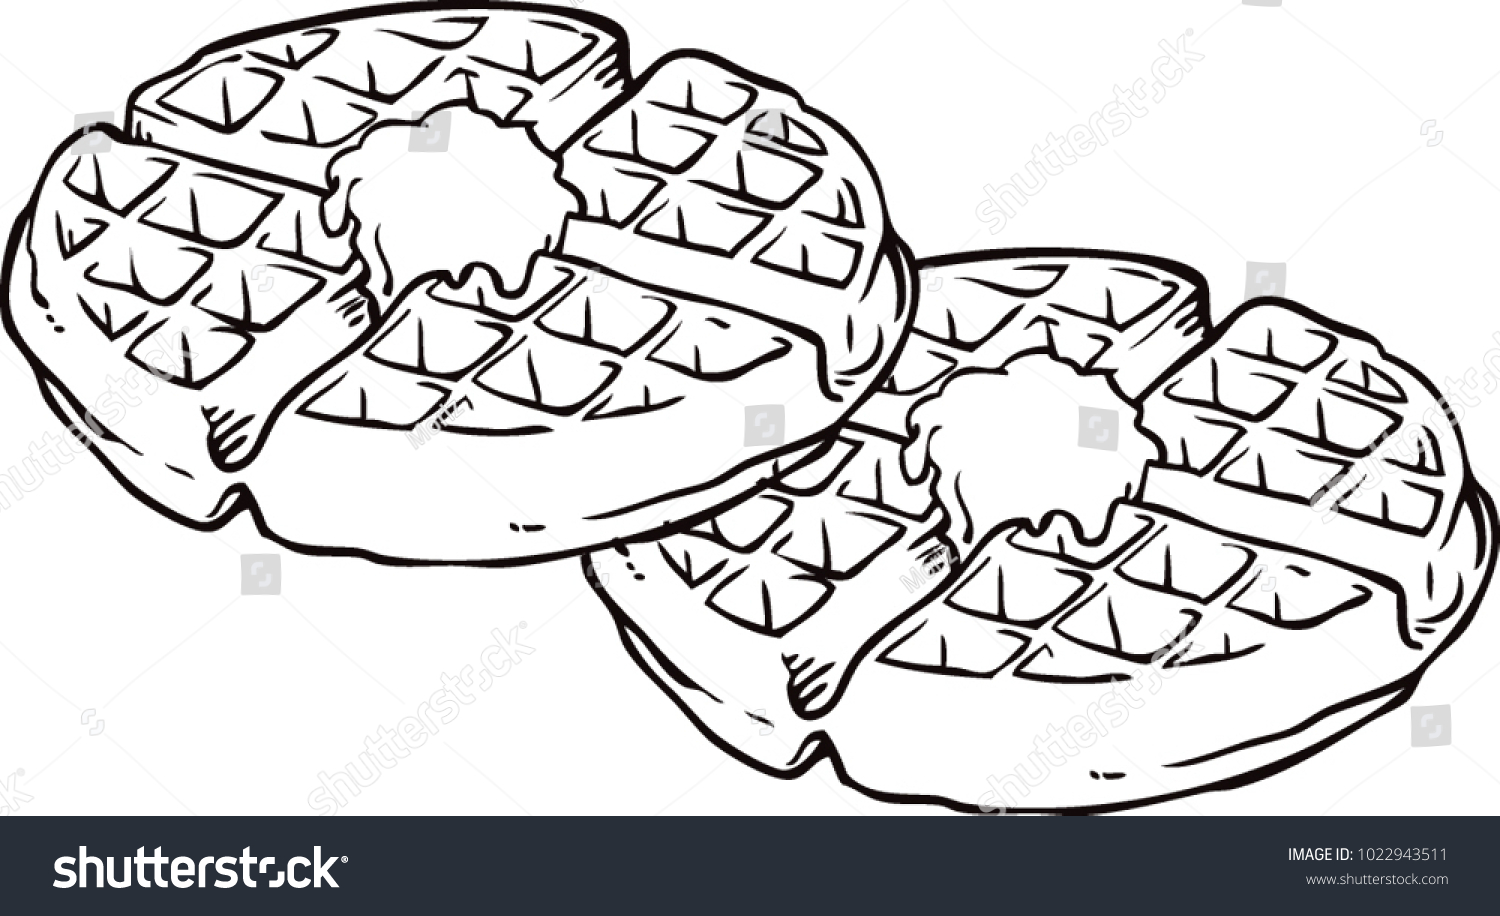 waffle black and white